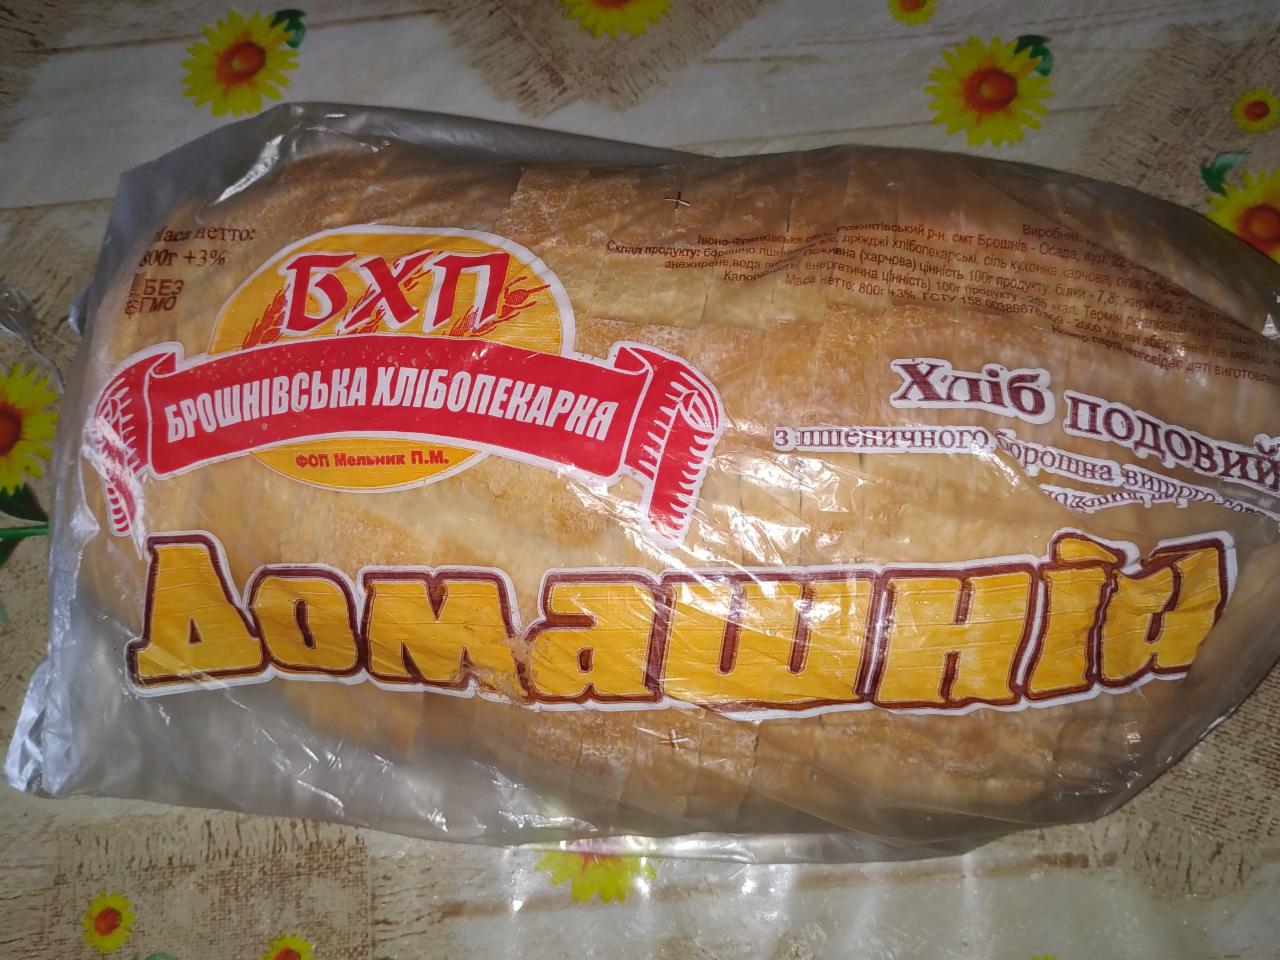 Фото - Хліб Домашній подовий Брошнівська хлібопекарня